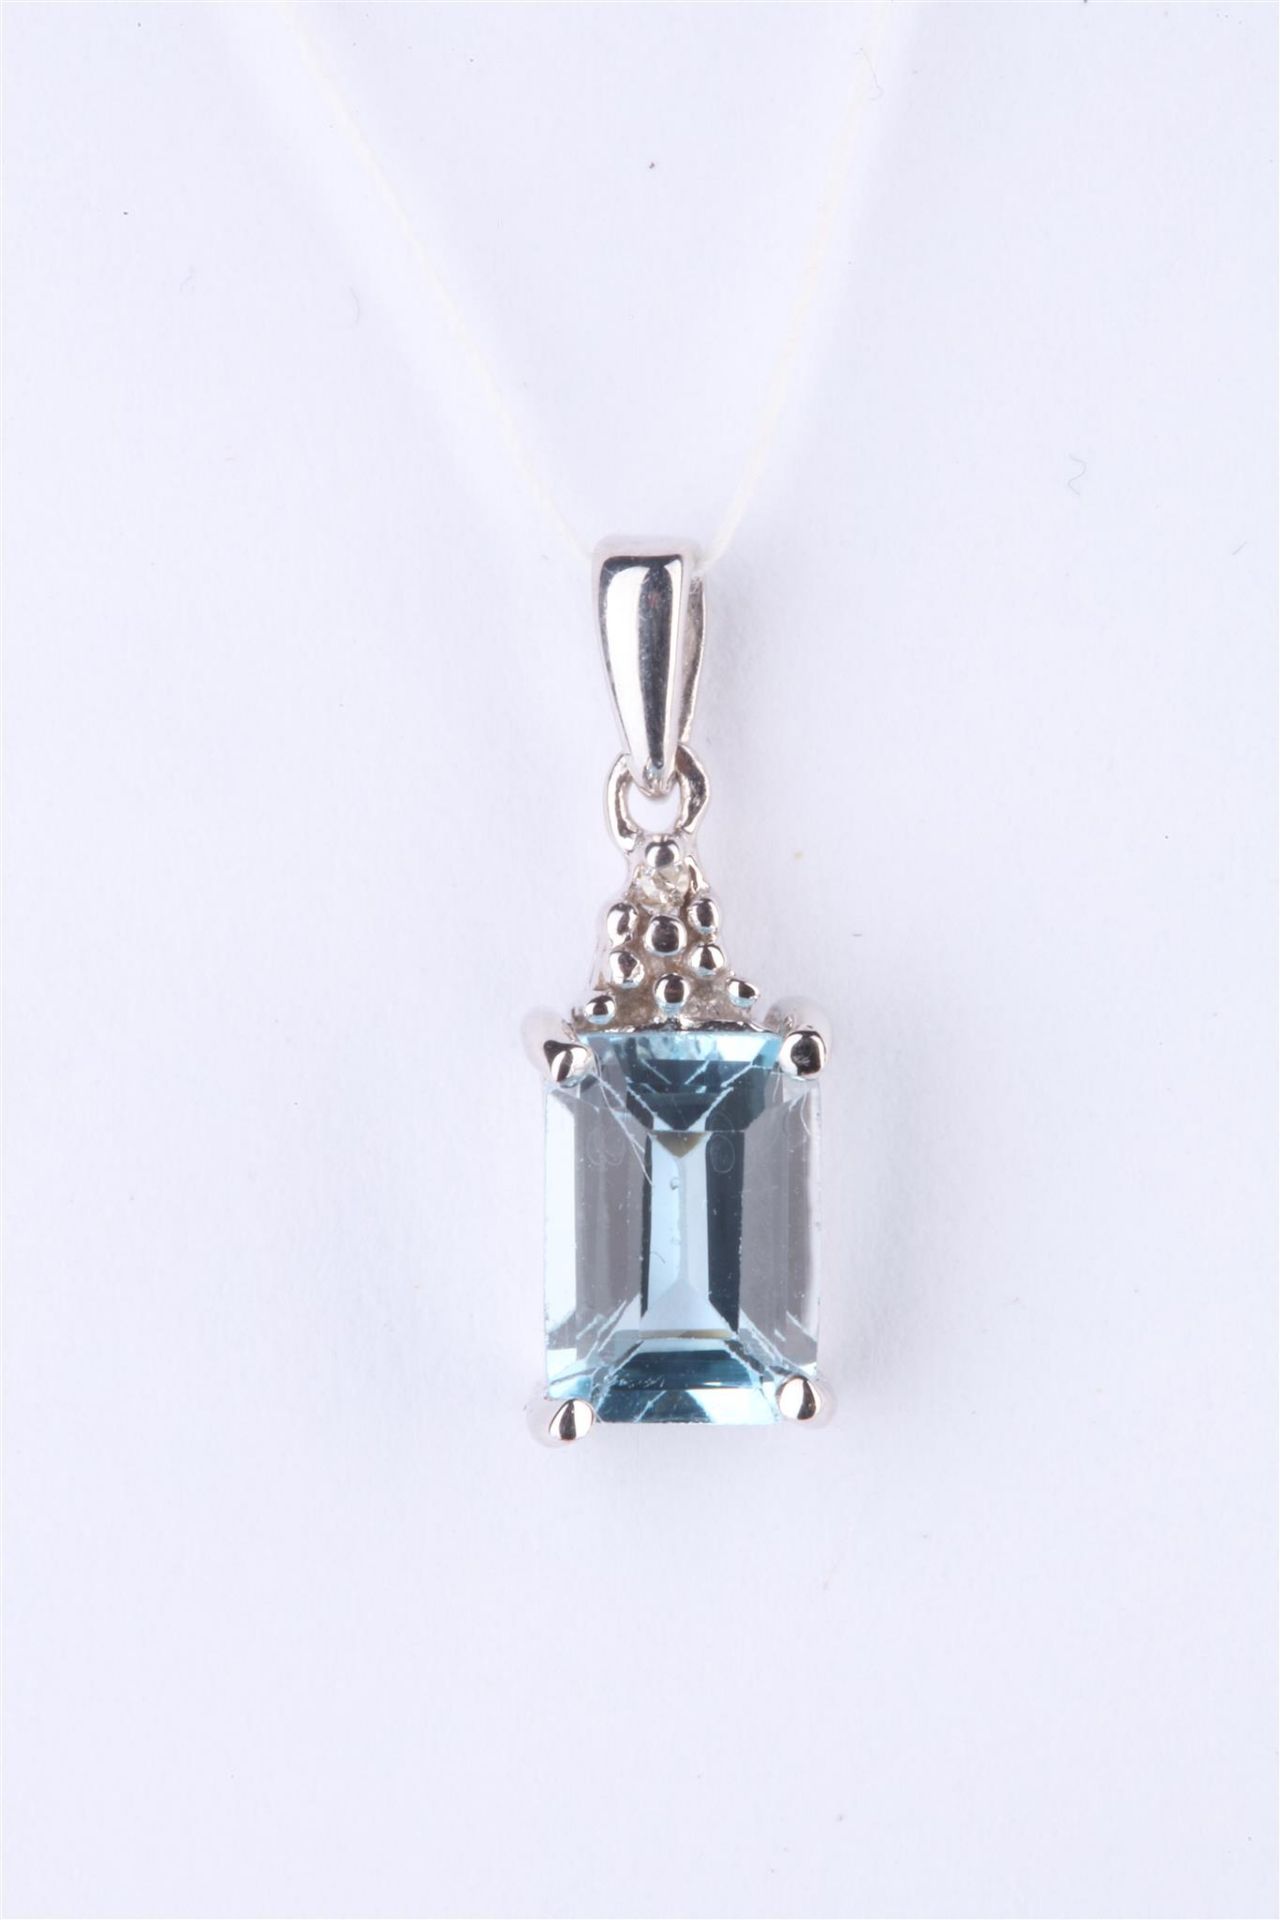 + VAT Ladies Silver Aquamarine and Diamond Pendant with Oblong Central Aquamarine